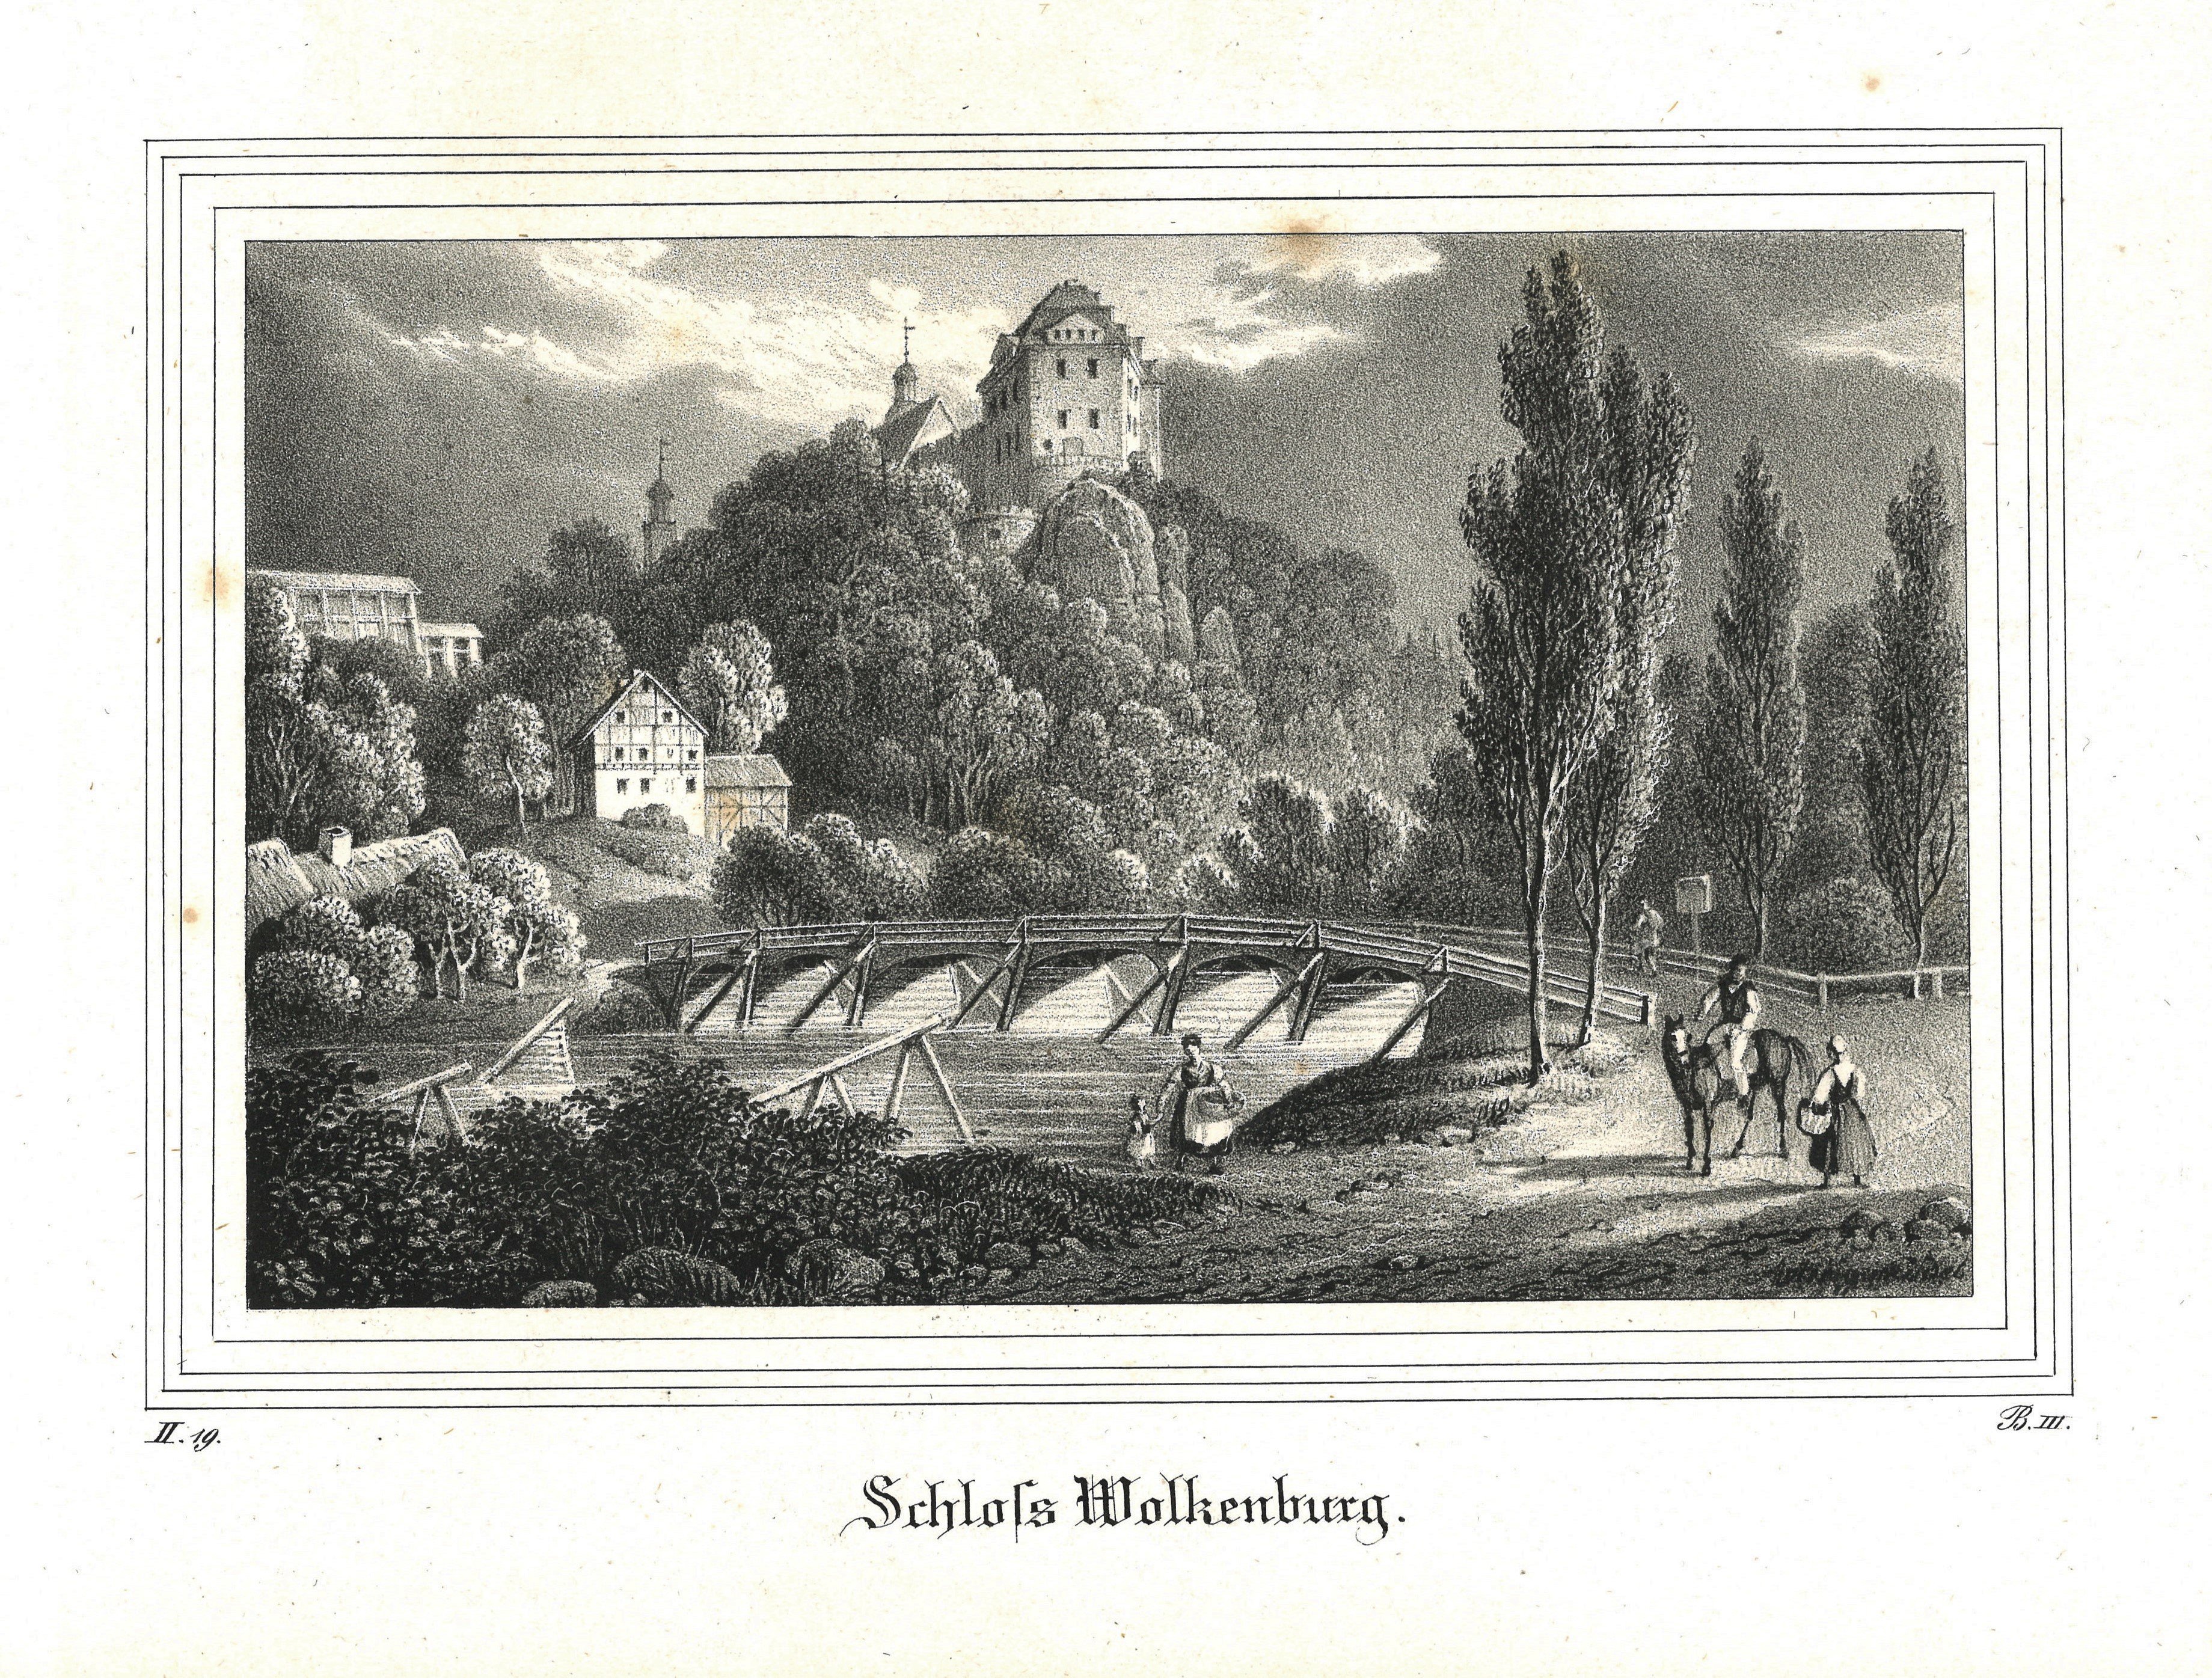 Wolkenburg (Mulde) (Sachsen): Schloss Wolkenburg (Landesgeschichtliche Vereinigung für die Mark Brandenburg e.V., Archiv CC BY)